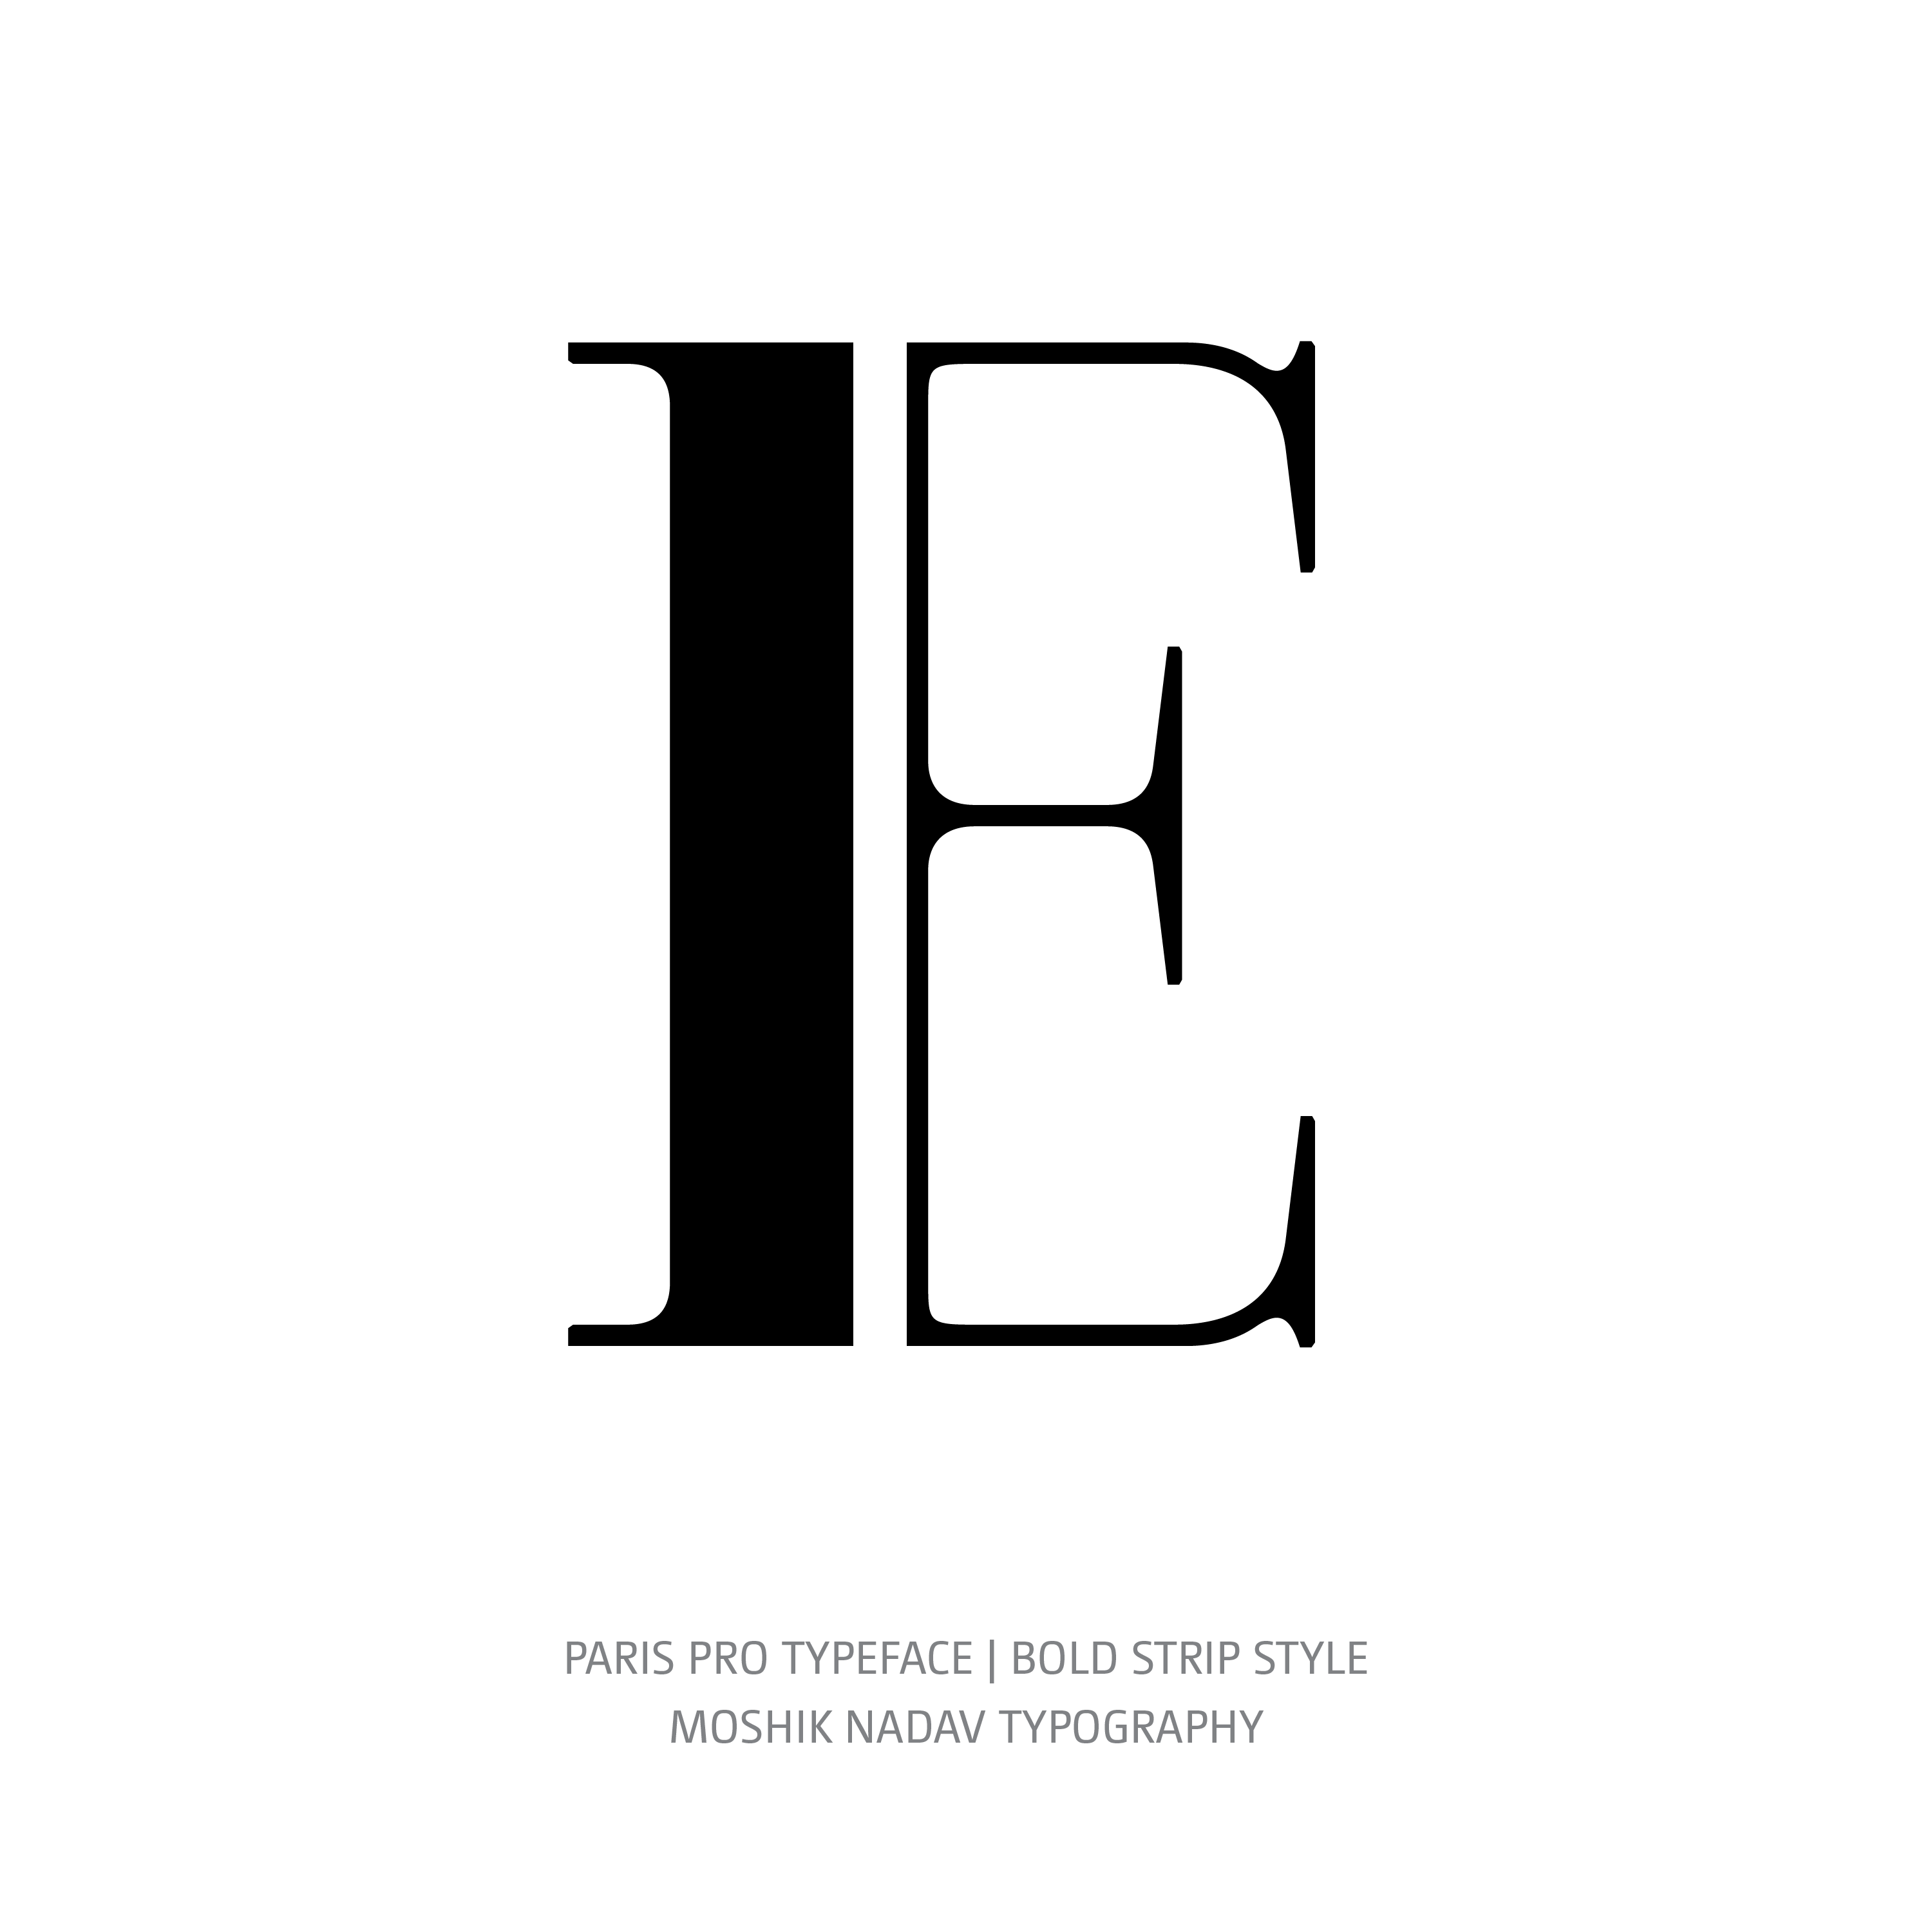 Paris Pro Typeface Bold Strip E